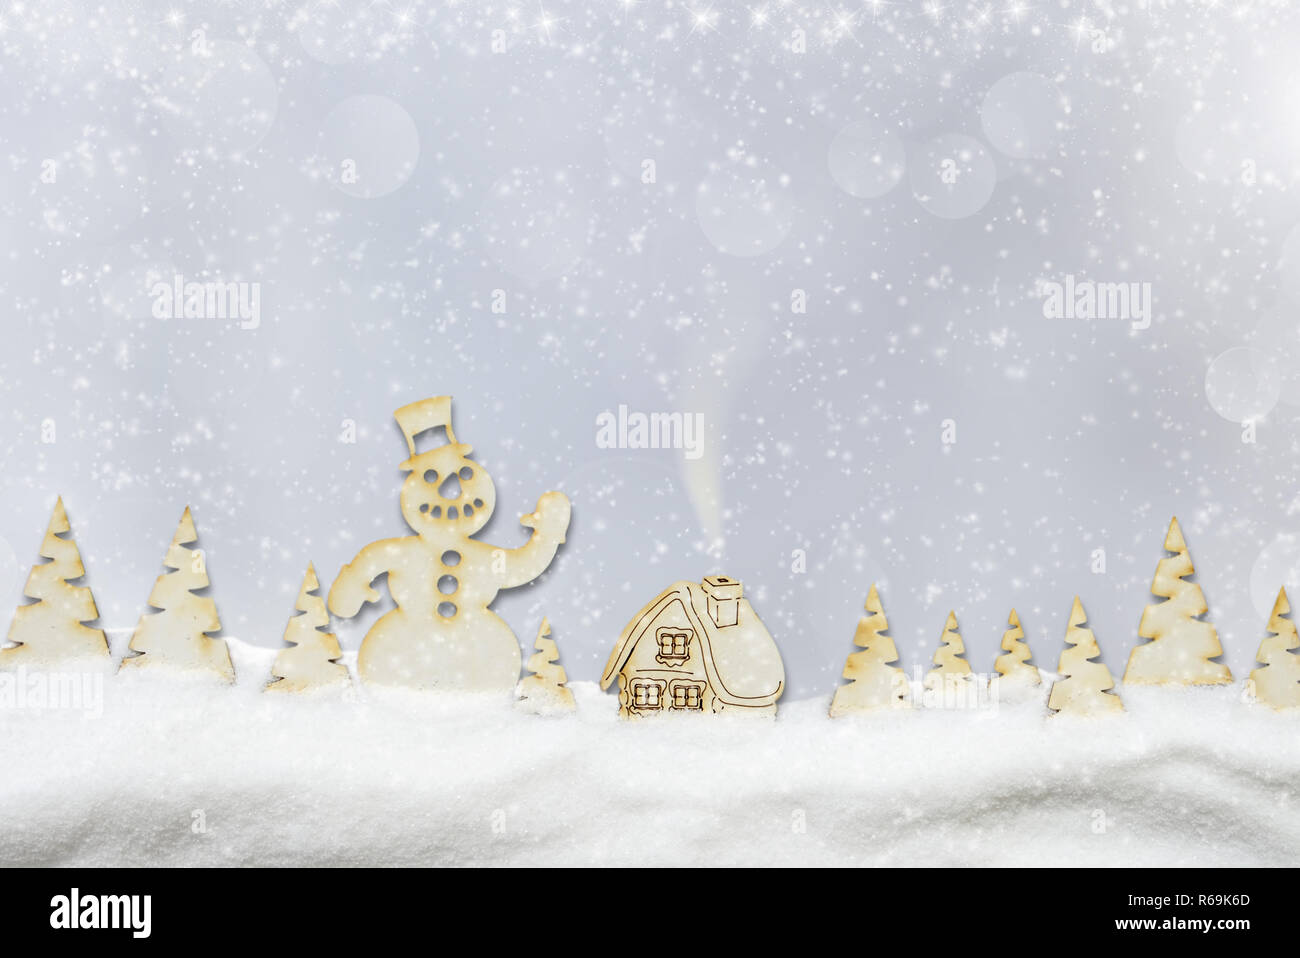 Noël arrière-plan. Village de fées, bonhomme de neige dans la forêt d'hiver et de neige Banque D'Images